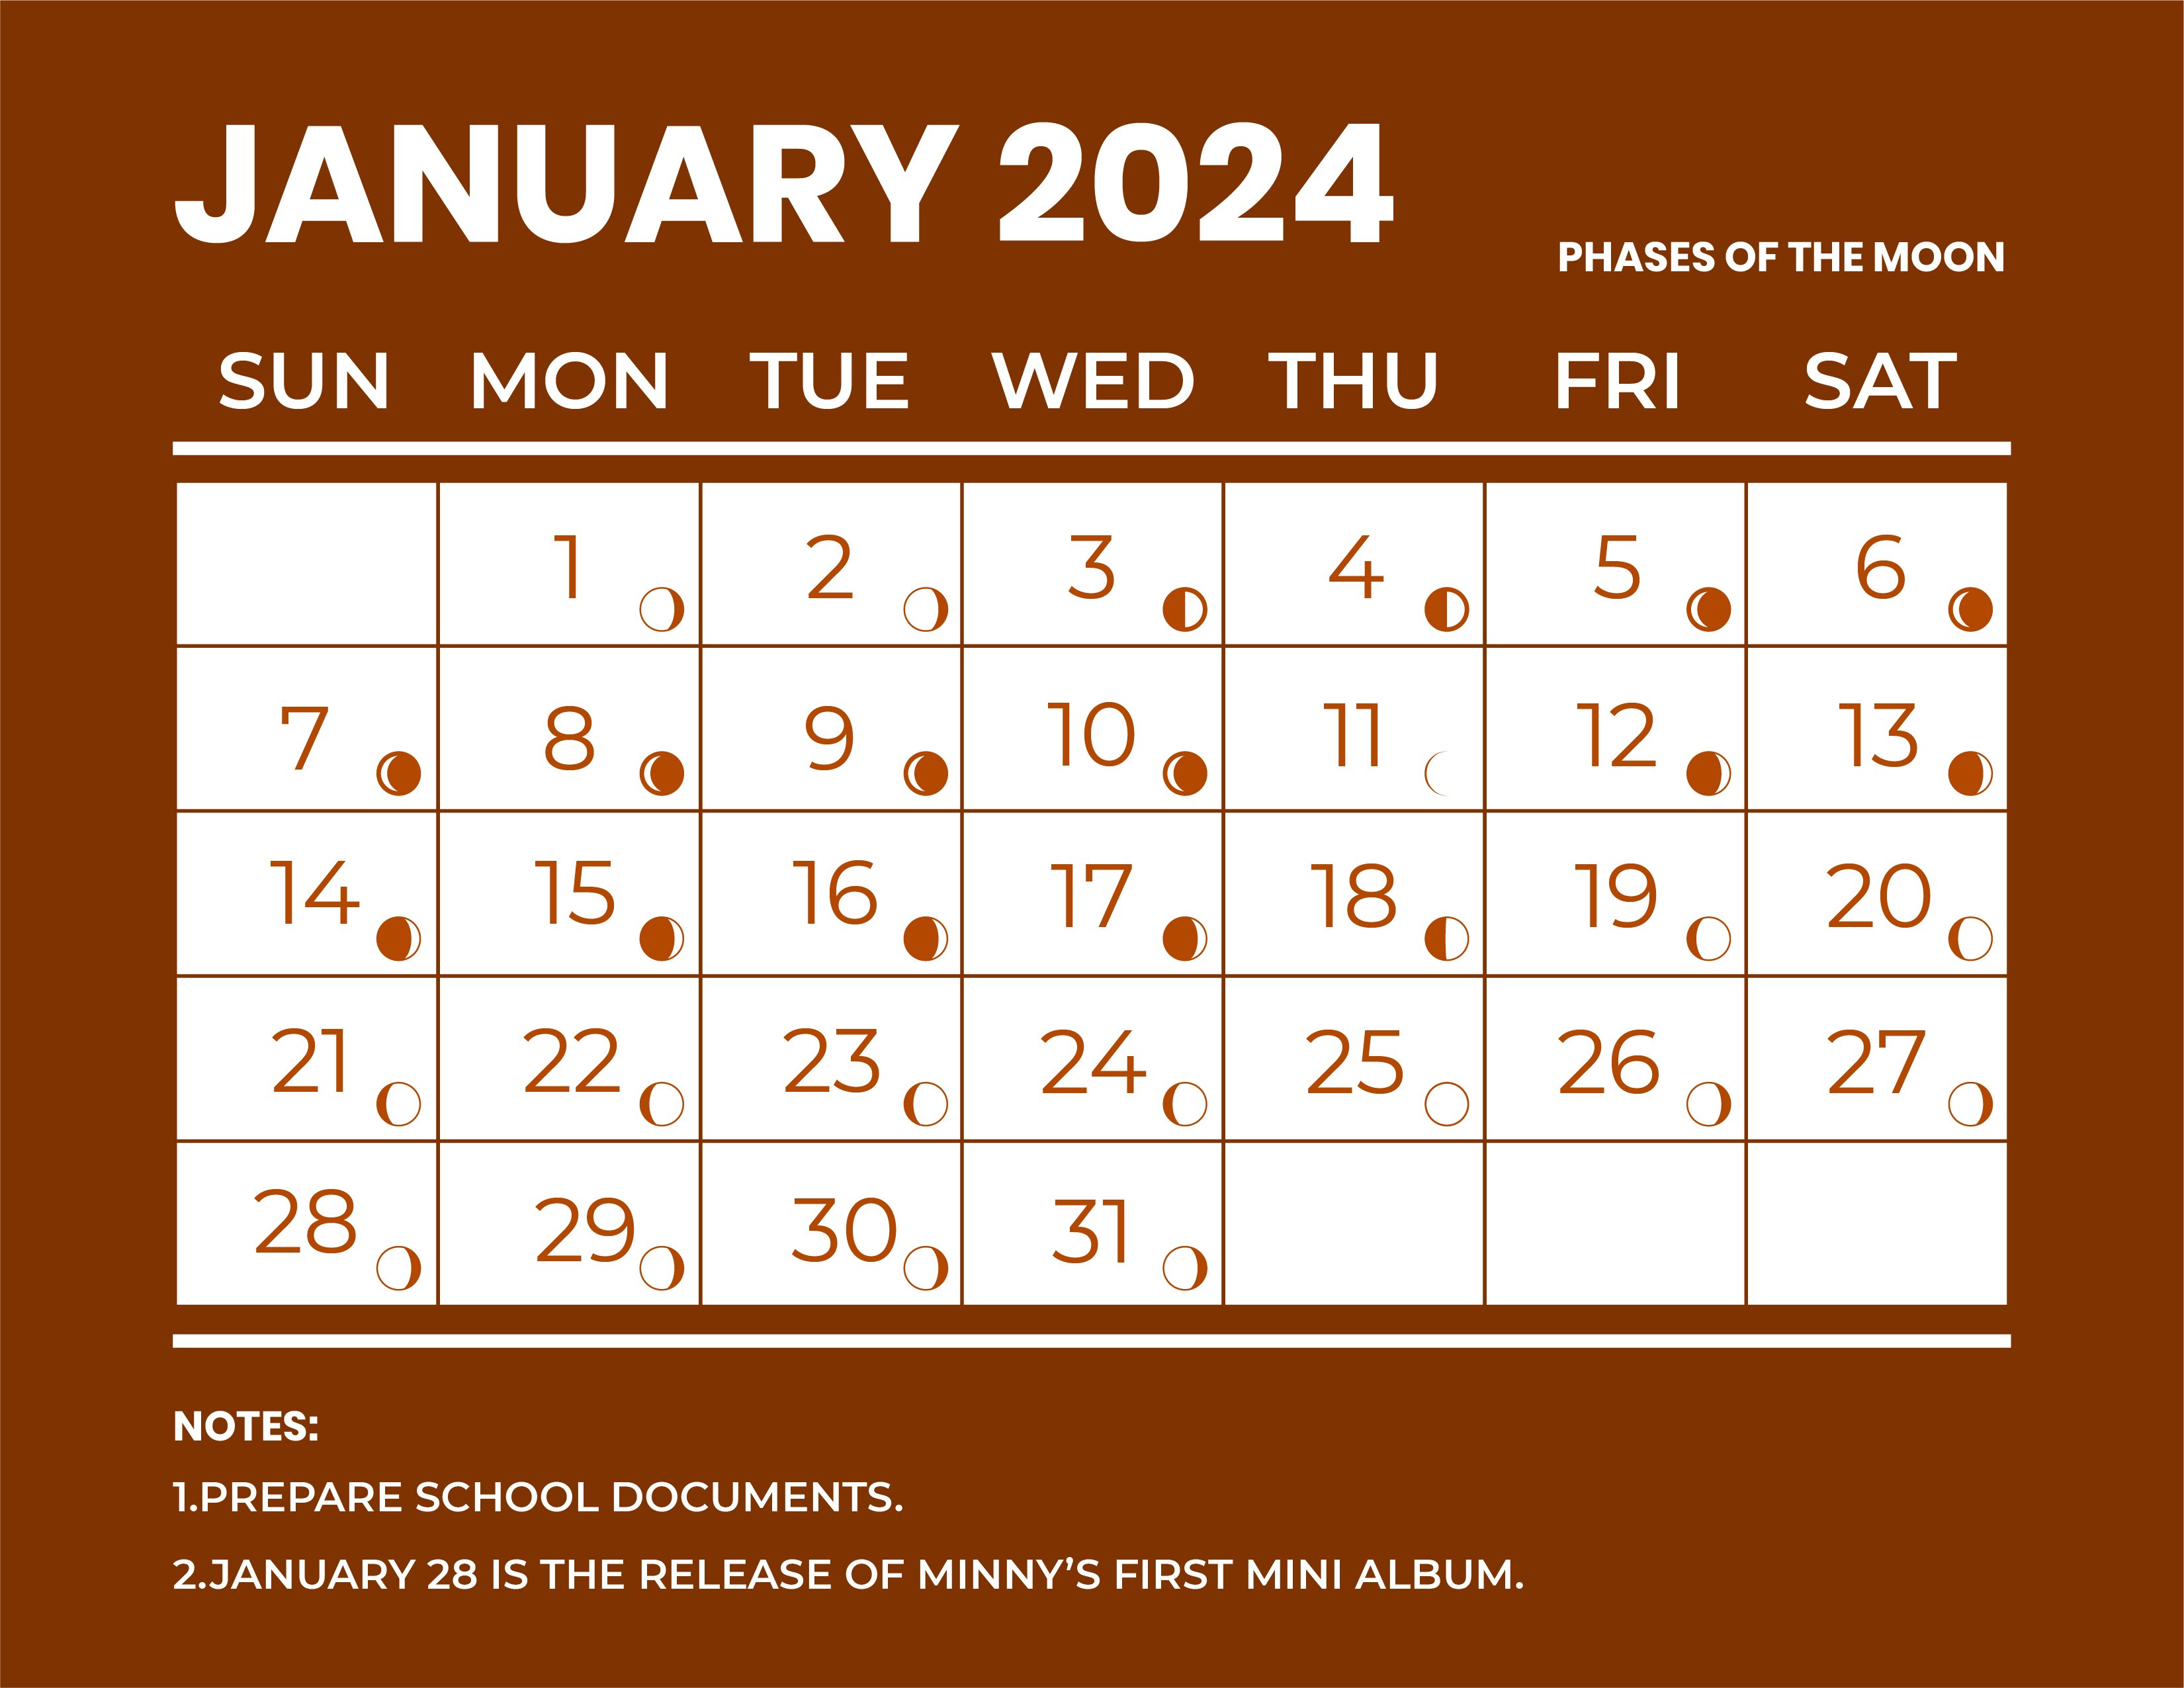 Calendar For January 2024 With Moon Phases January 2024 Calendar